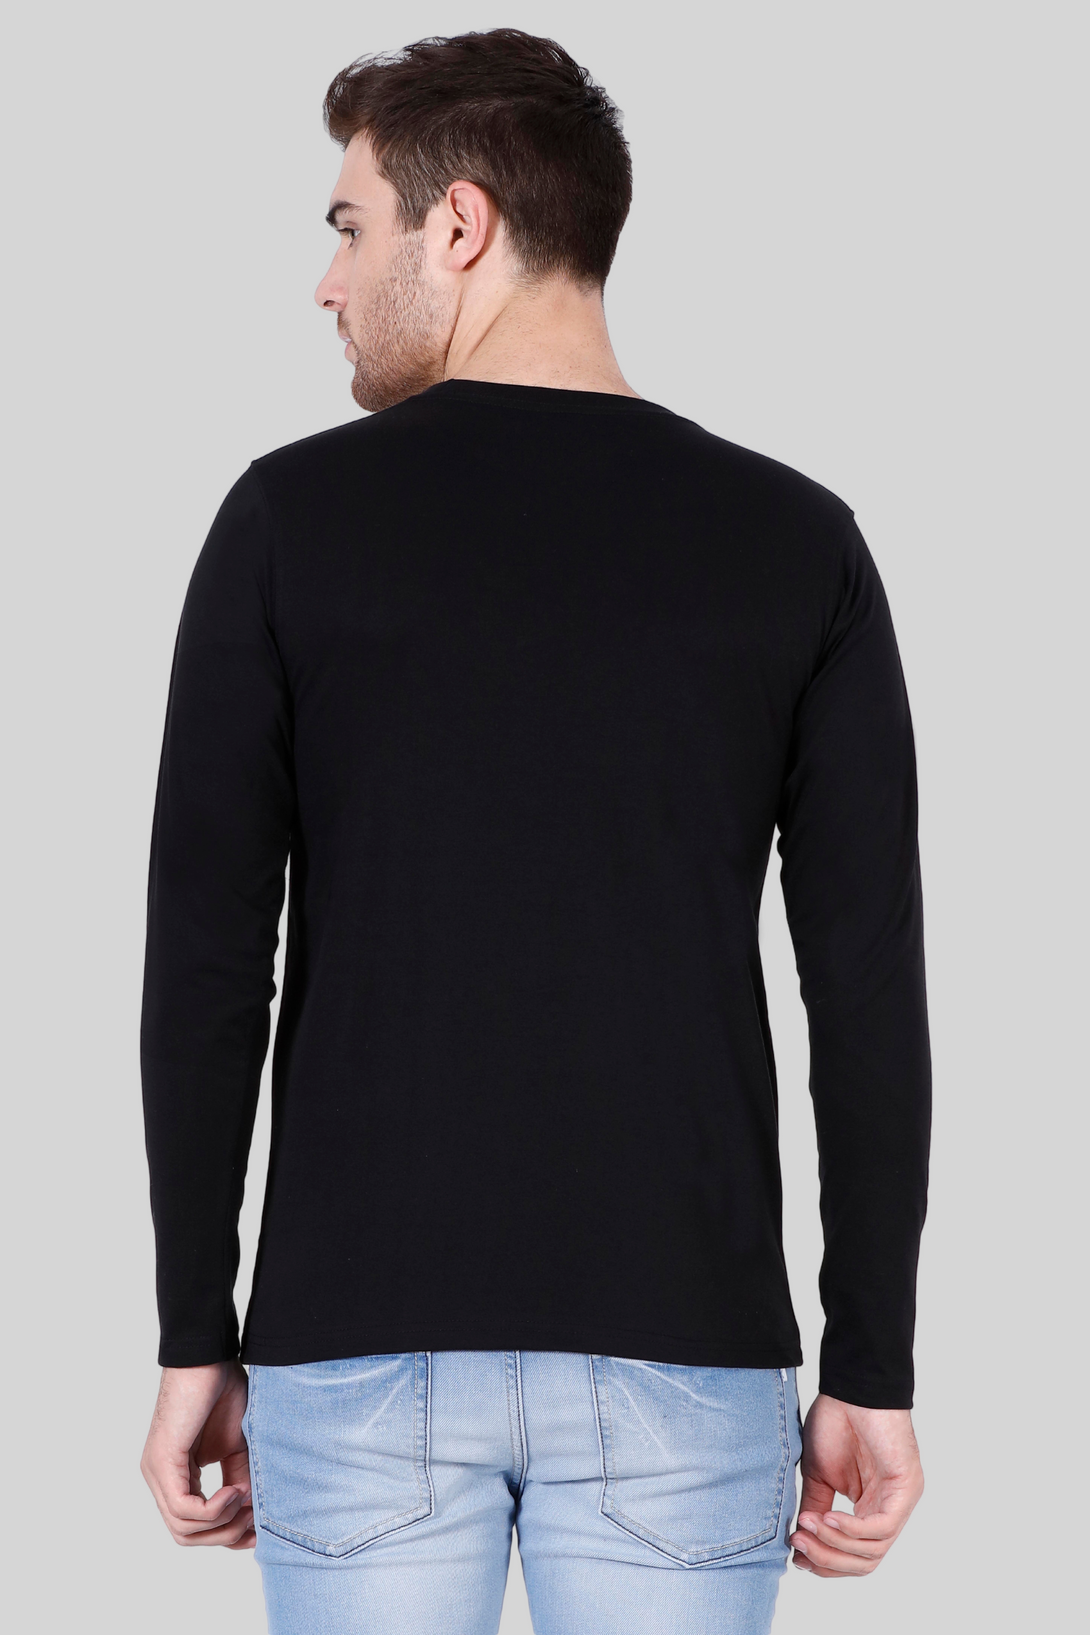 Black Full Sleeve T-Shirt For Men - WowWaves - 9